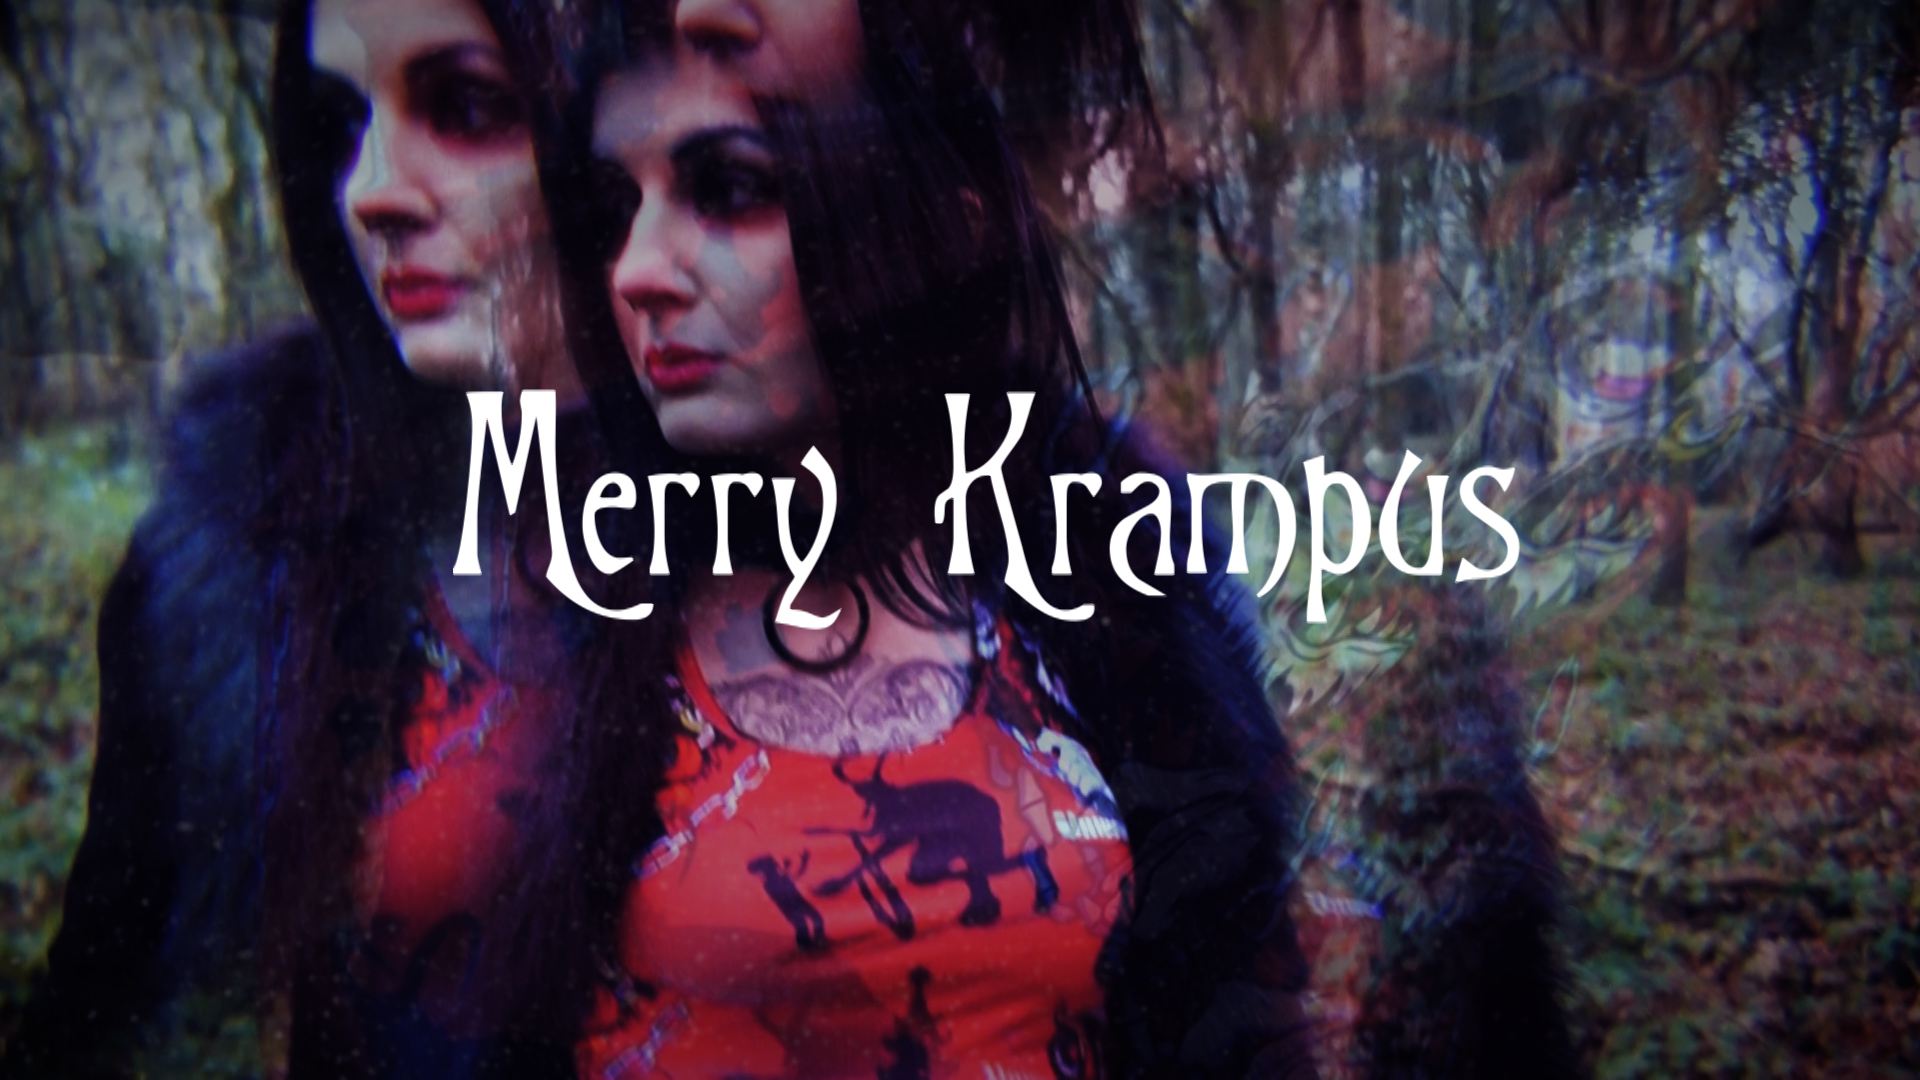 Merry Krampus